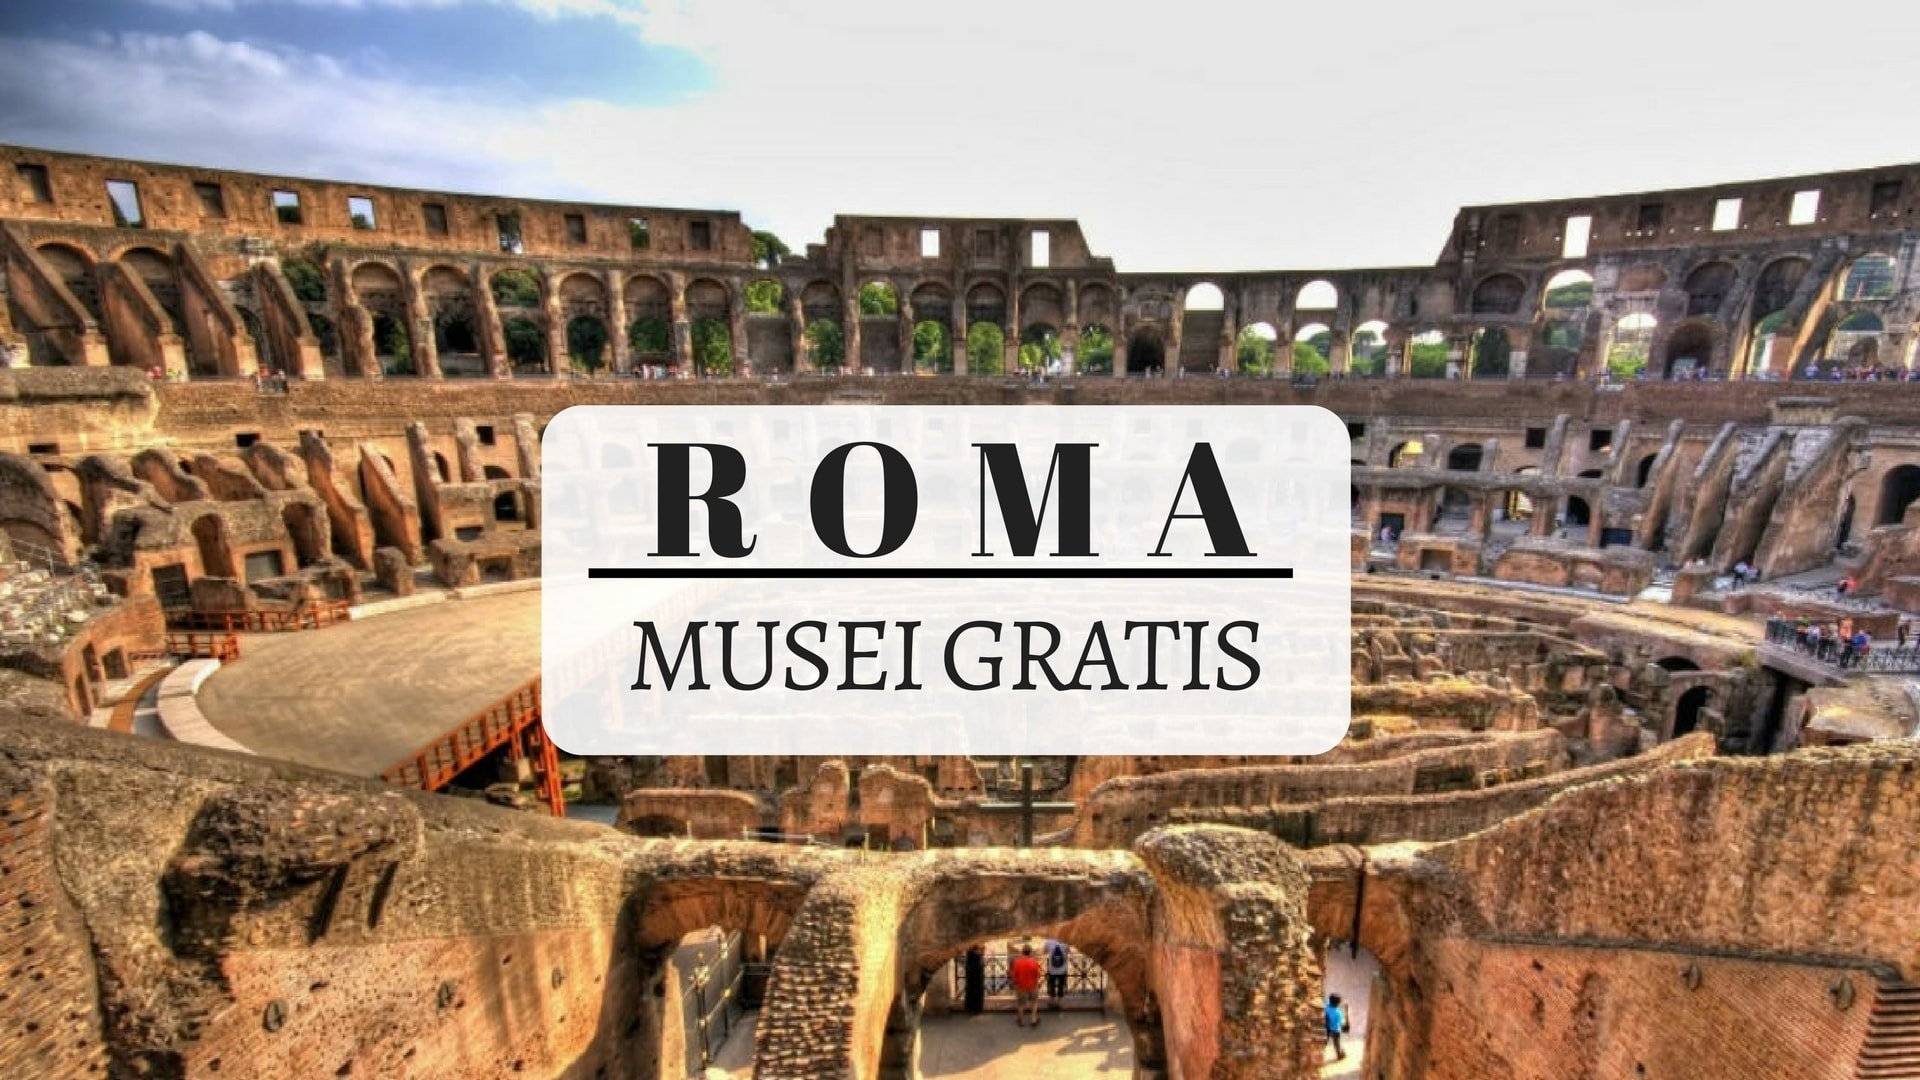 Musei gratis a Roma la prima domenica del mese